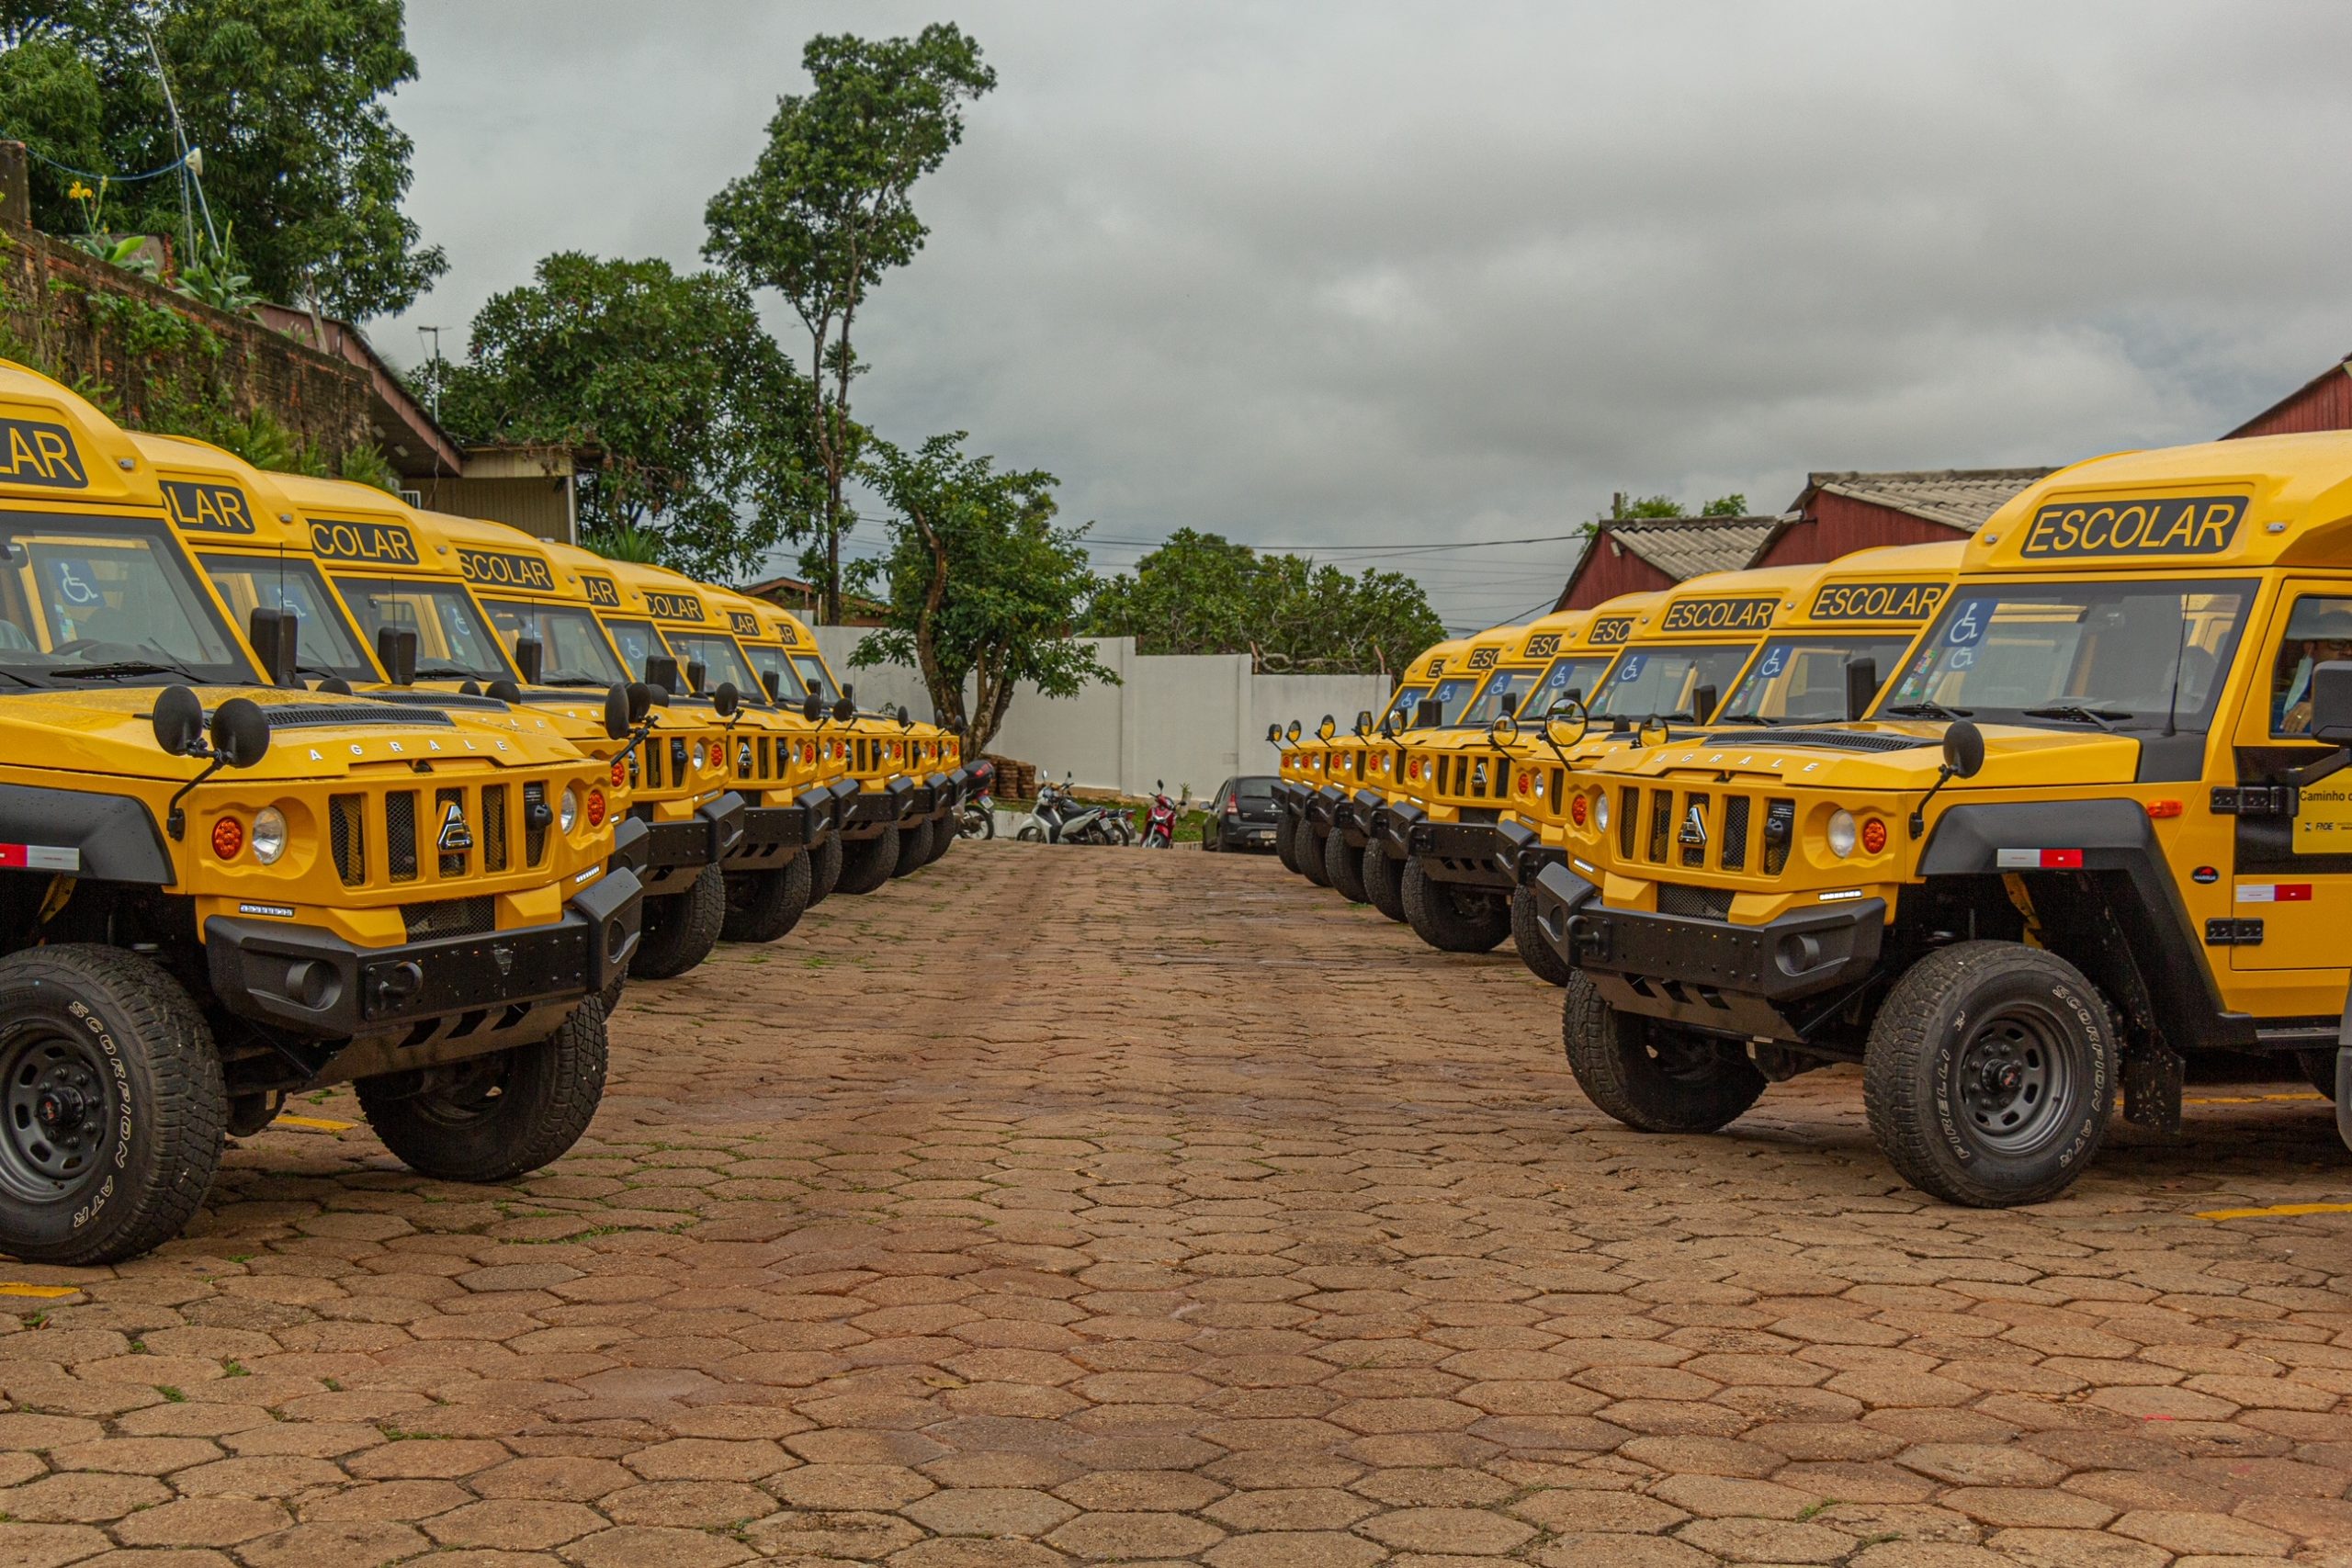 Educação apresenta frota de novos ônibus escolares para atender escolas rurais